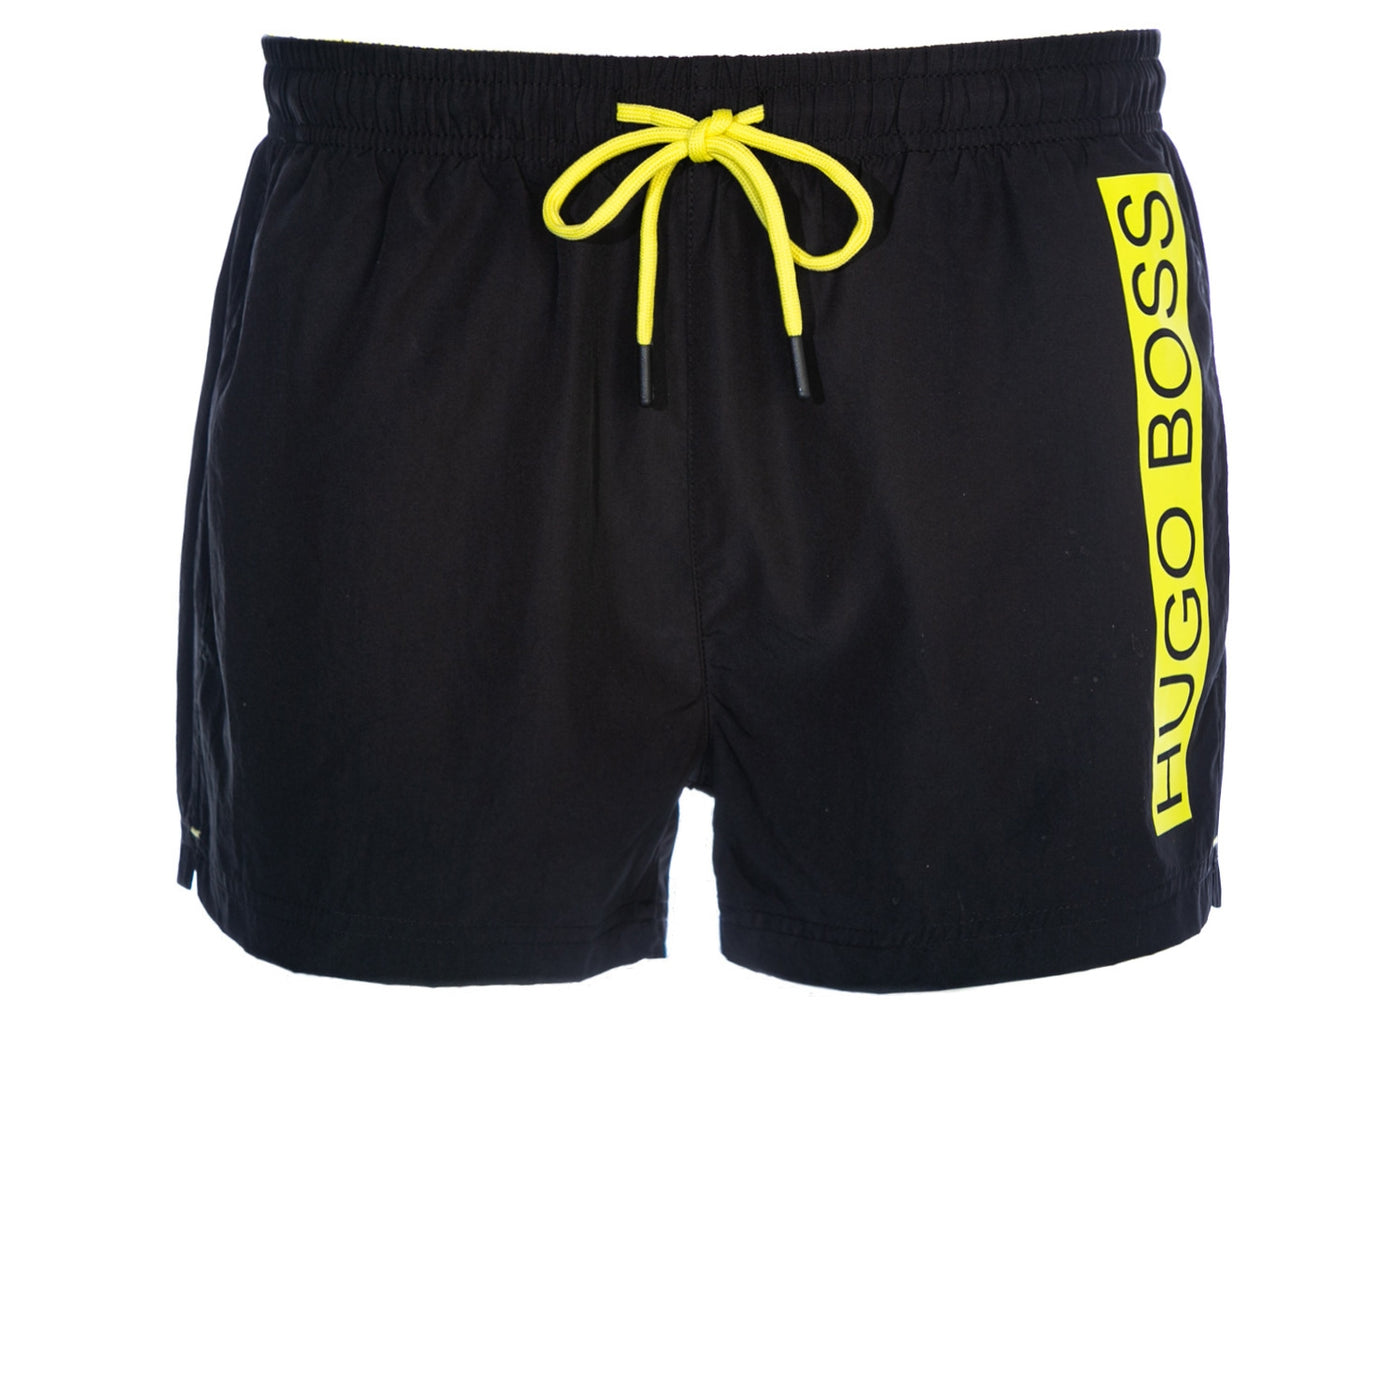 BOSS Mooneye Swim Short in Black & Yellow